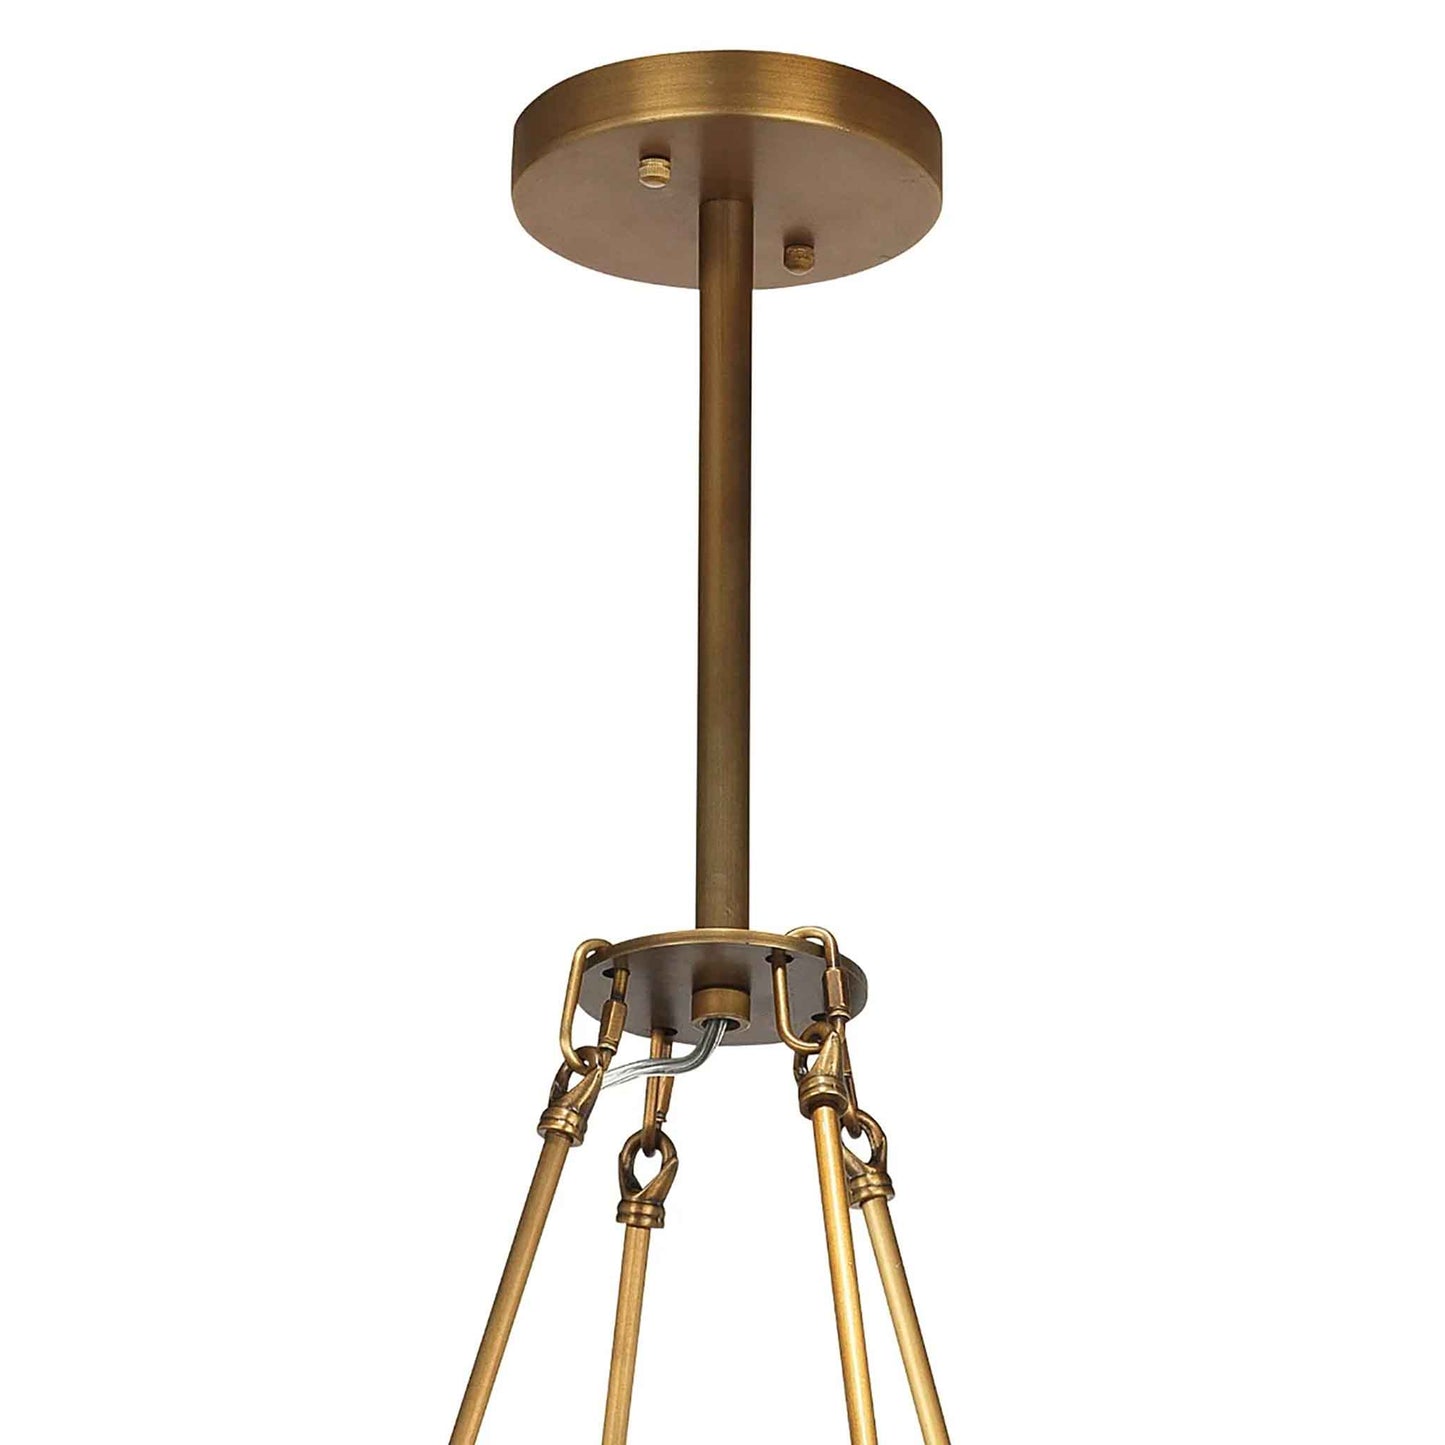 8 light 36 inch brass chandelier